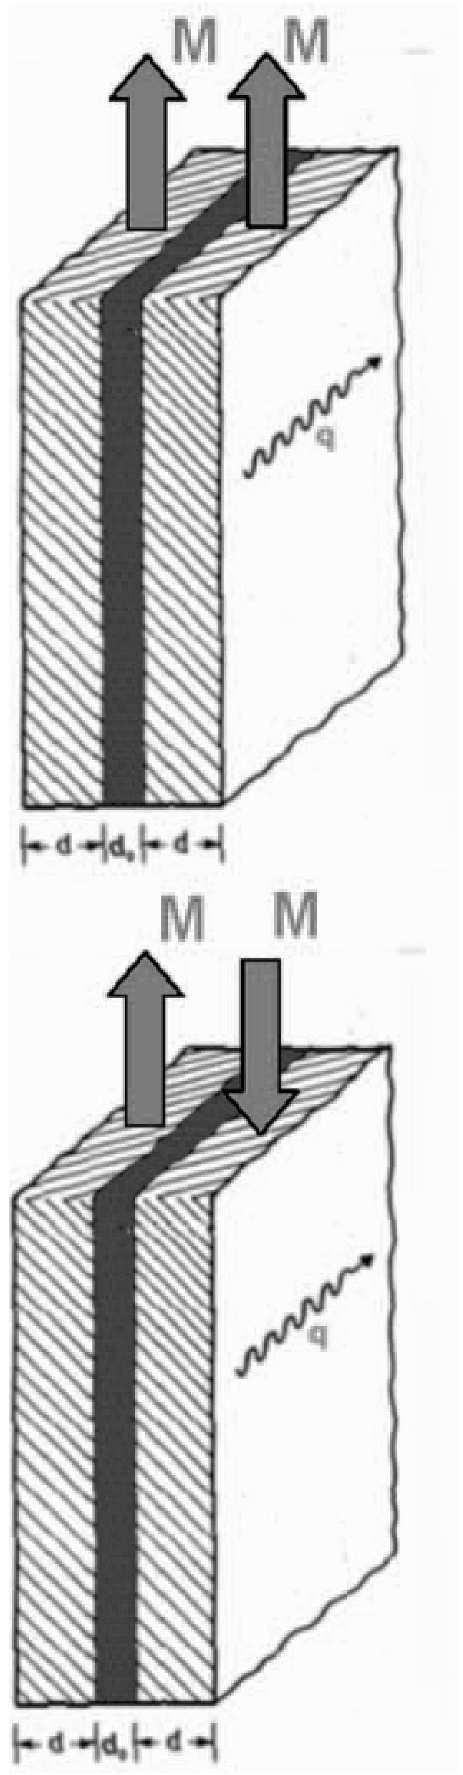 Rys. 3. Sprzężone fale DE w podwójnej warstwie magnetycznej dla równoległego (część górna) oraz antyrównoległego (część dolna) ustawienia namagnesowania M [3].